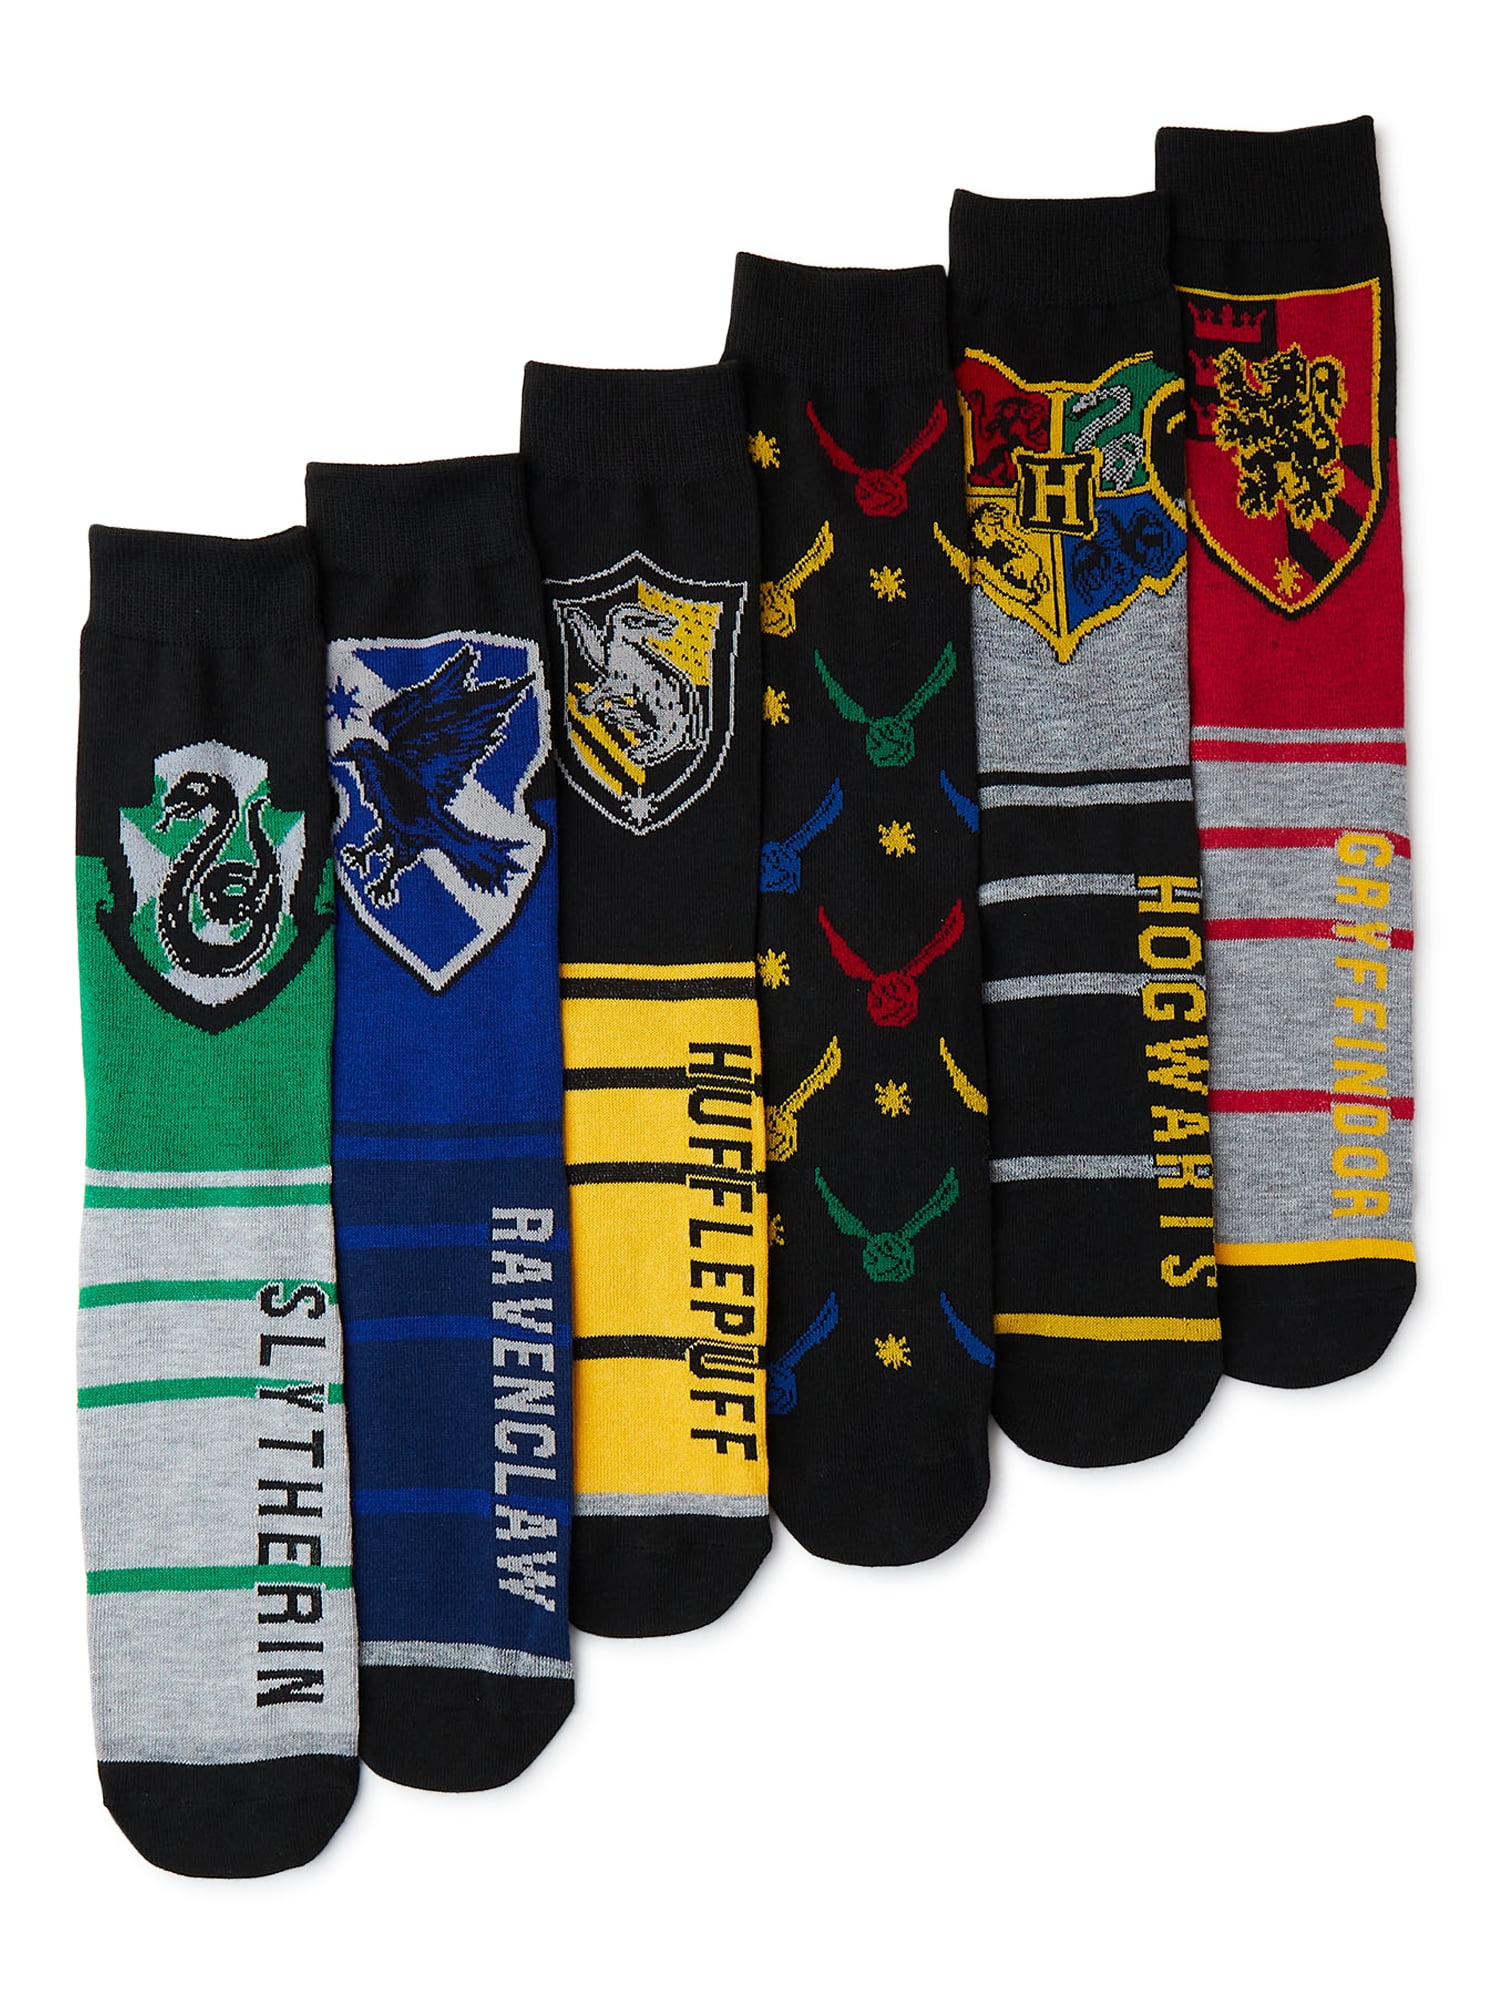 Harry Potter Mens Socks, 6-Pack